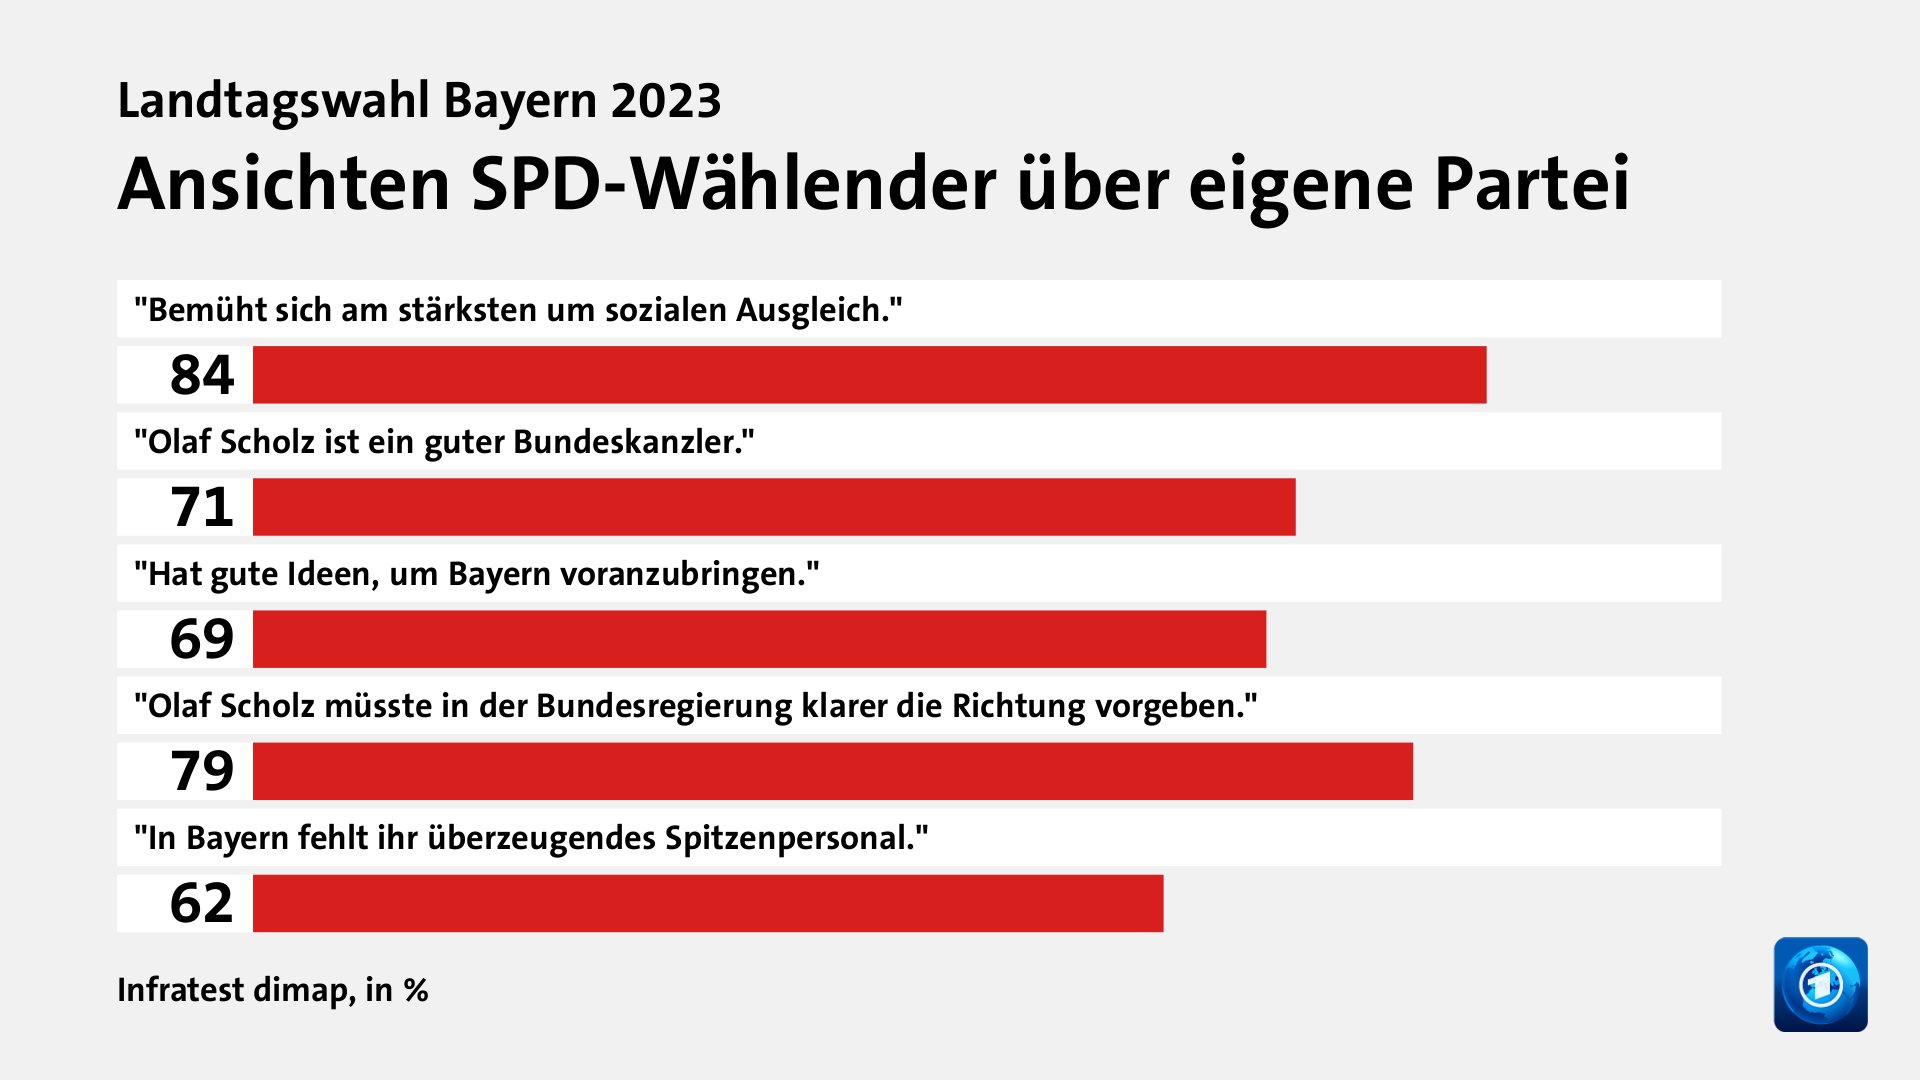 Ansichten SPD-Wählender über eigene Partei, in %: 